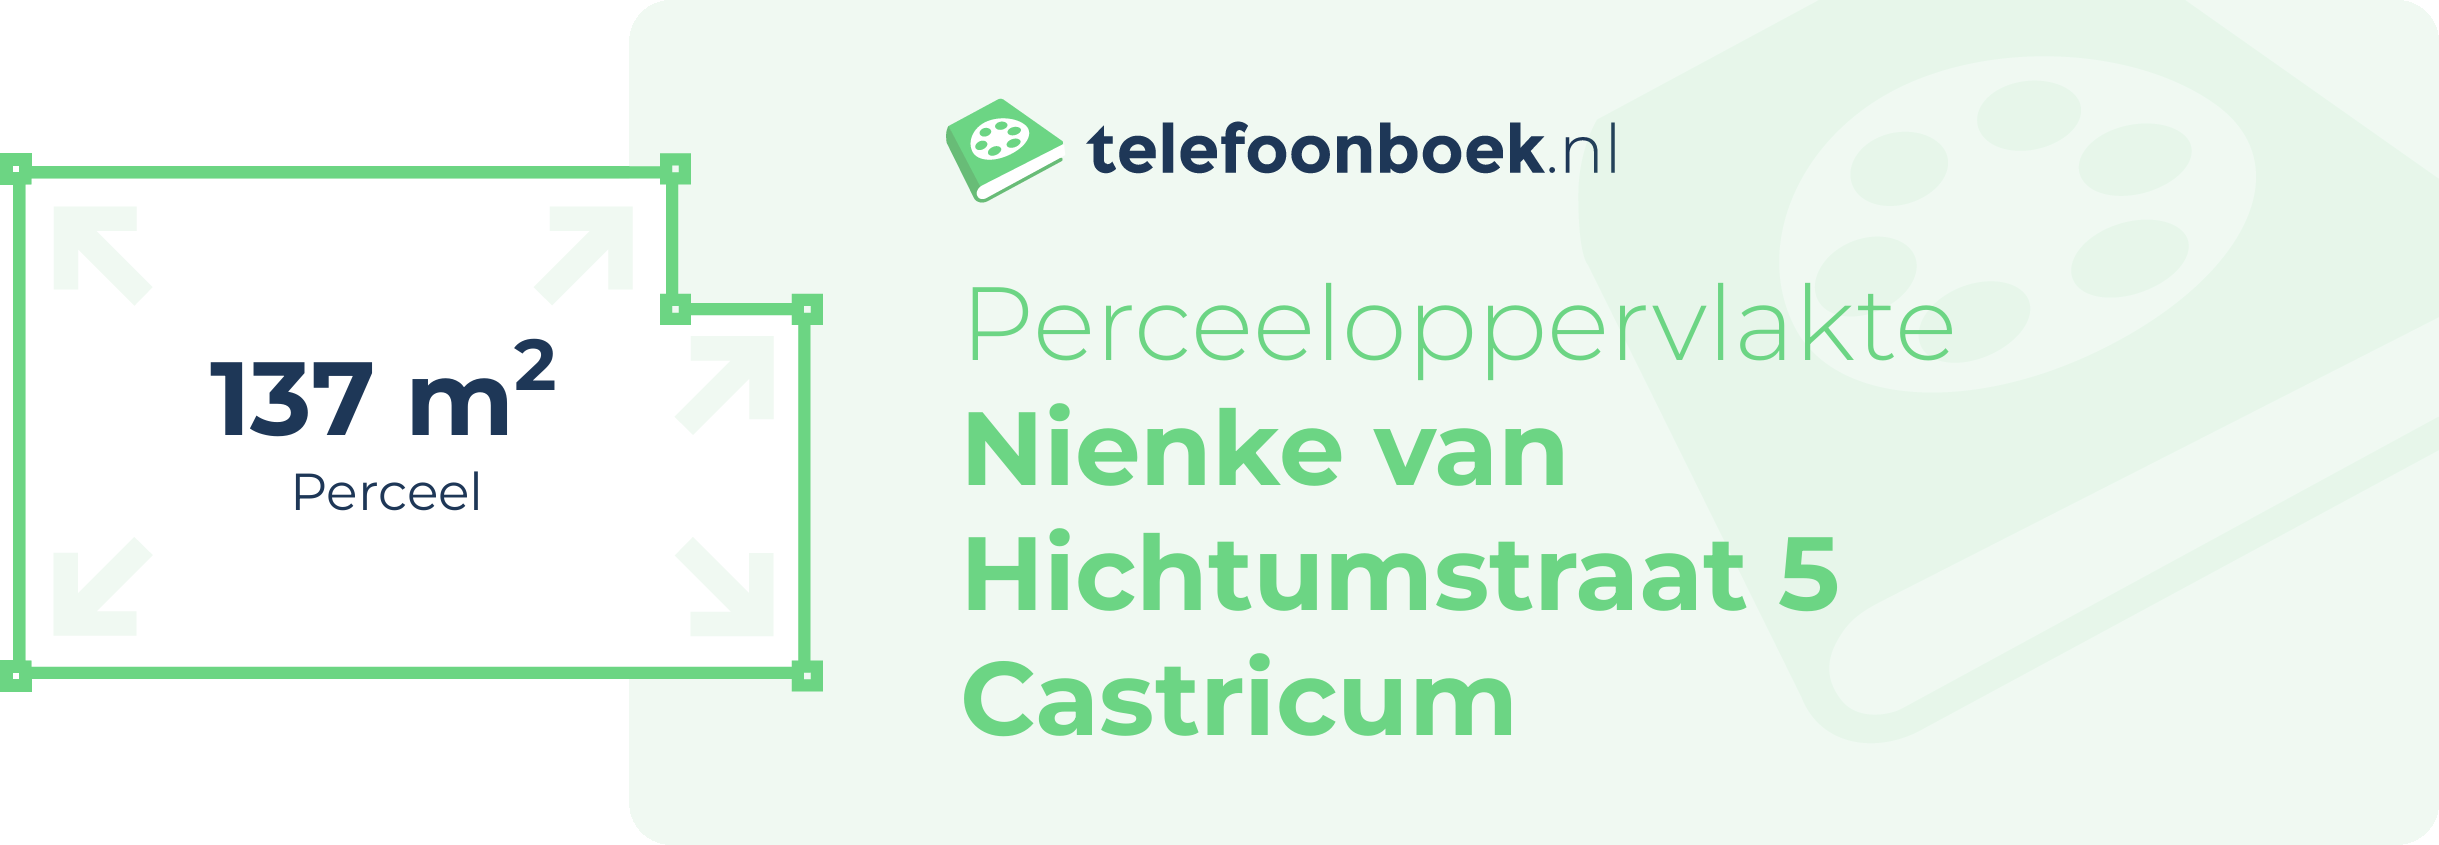 Perceeloppervlakte Nienke Van Hichtumstraat 5 Castricum